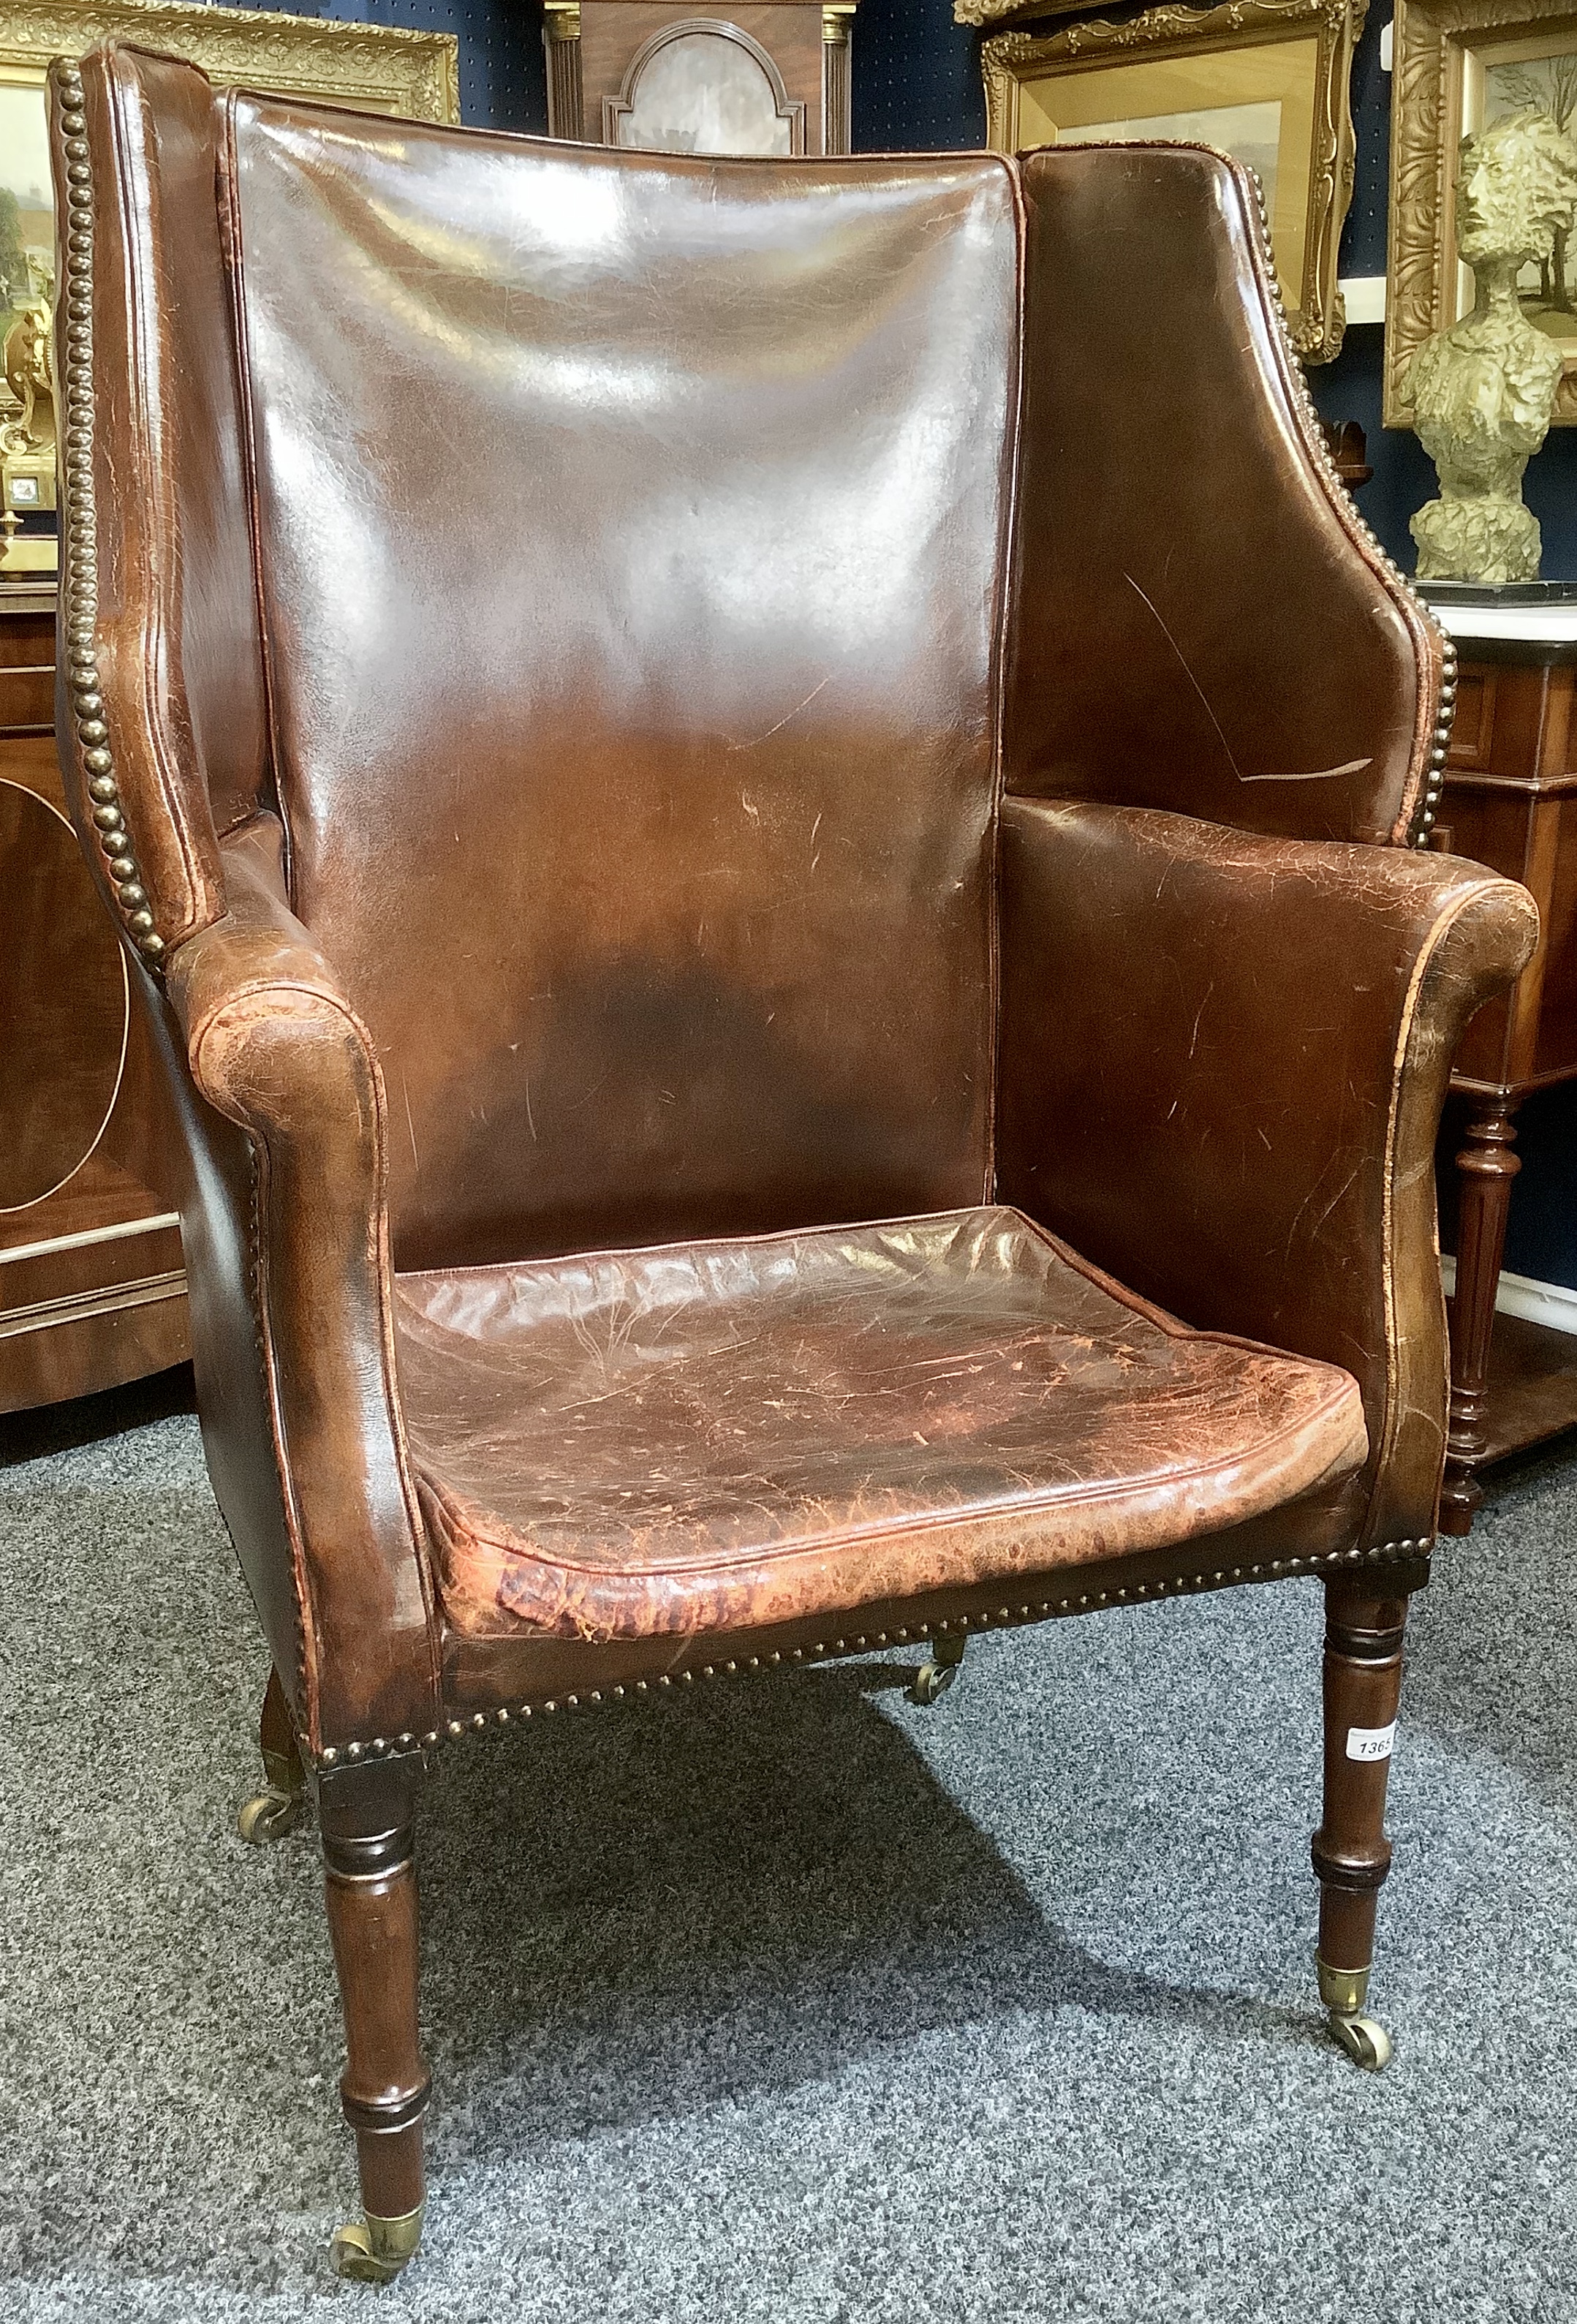 A 19th century mahogany porter's chair,